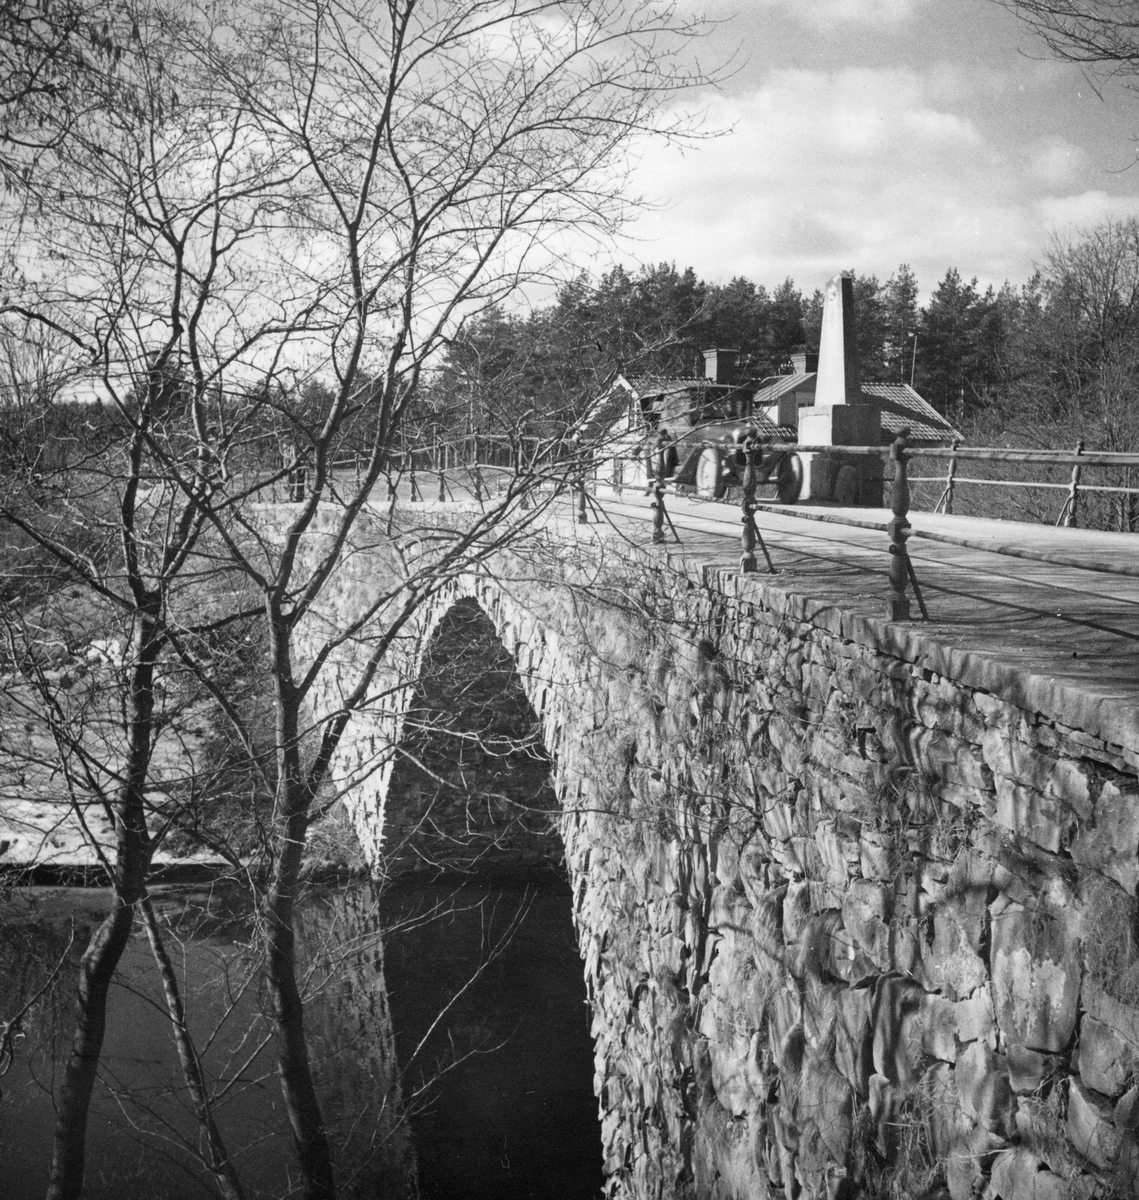 Gustavsbron eller Gustavs bro. Bron fått sitt namn efter det bakhåll som planerades mot Gustav III när han höll Gefle riksdag 1792. Stadsbyggmästaren Pousette lät 1772 bygga bron, som ledde landsvägstrafiken från Valbo till Gävle, på den plats där Gavelbron, som 1770 spolades bort av vårfloden, legat. Gustavsbron är en välvd stenbro med räcken av järn. Den pyramid av svensk marmor som pryder bron har överst ett namnchiffer för Gustav III krönt av en krona och där ovan inskriptionen "Gustafs Bro uppå Gefle stads och Valbo sockn kostnad sammanhwälfd DXIX Aug MDCCLXXII".